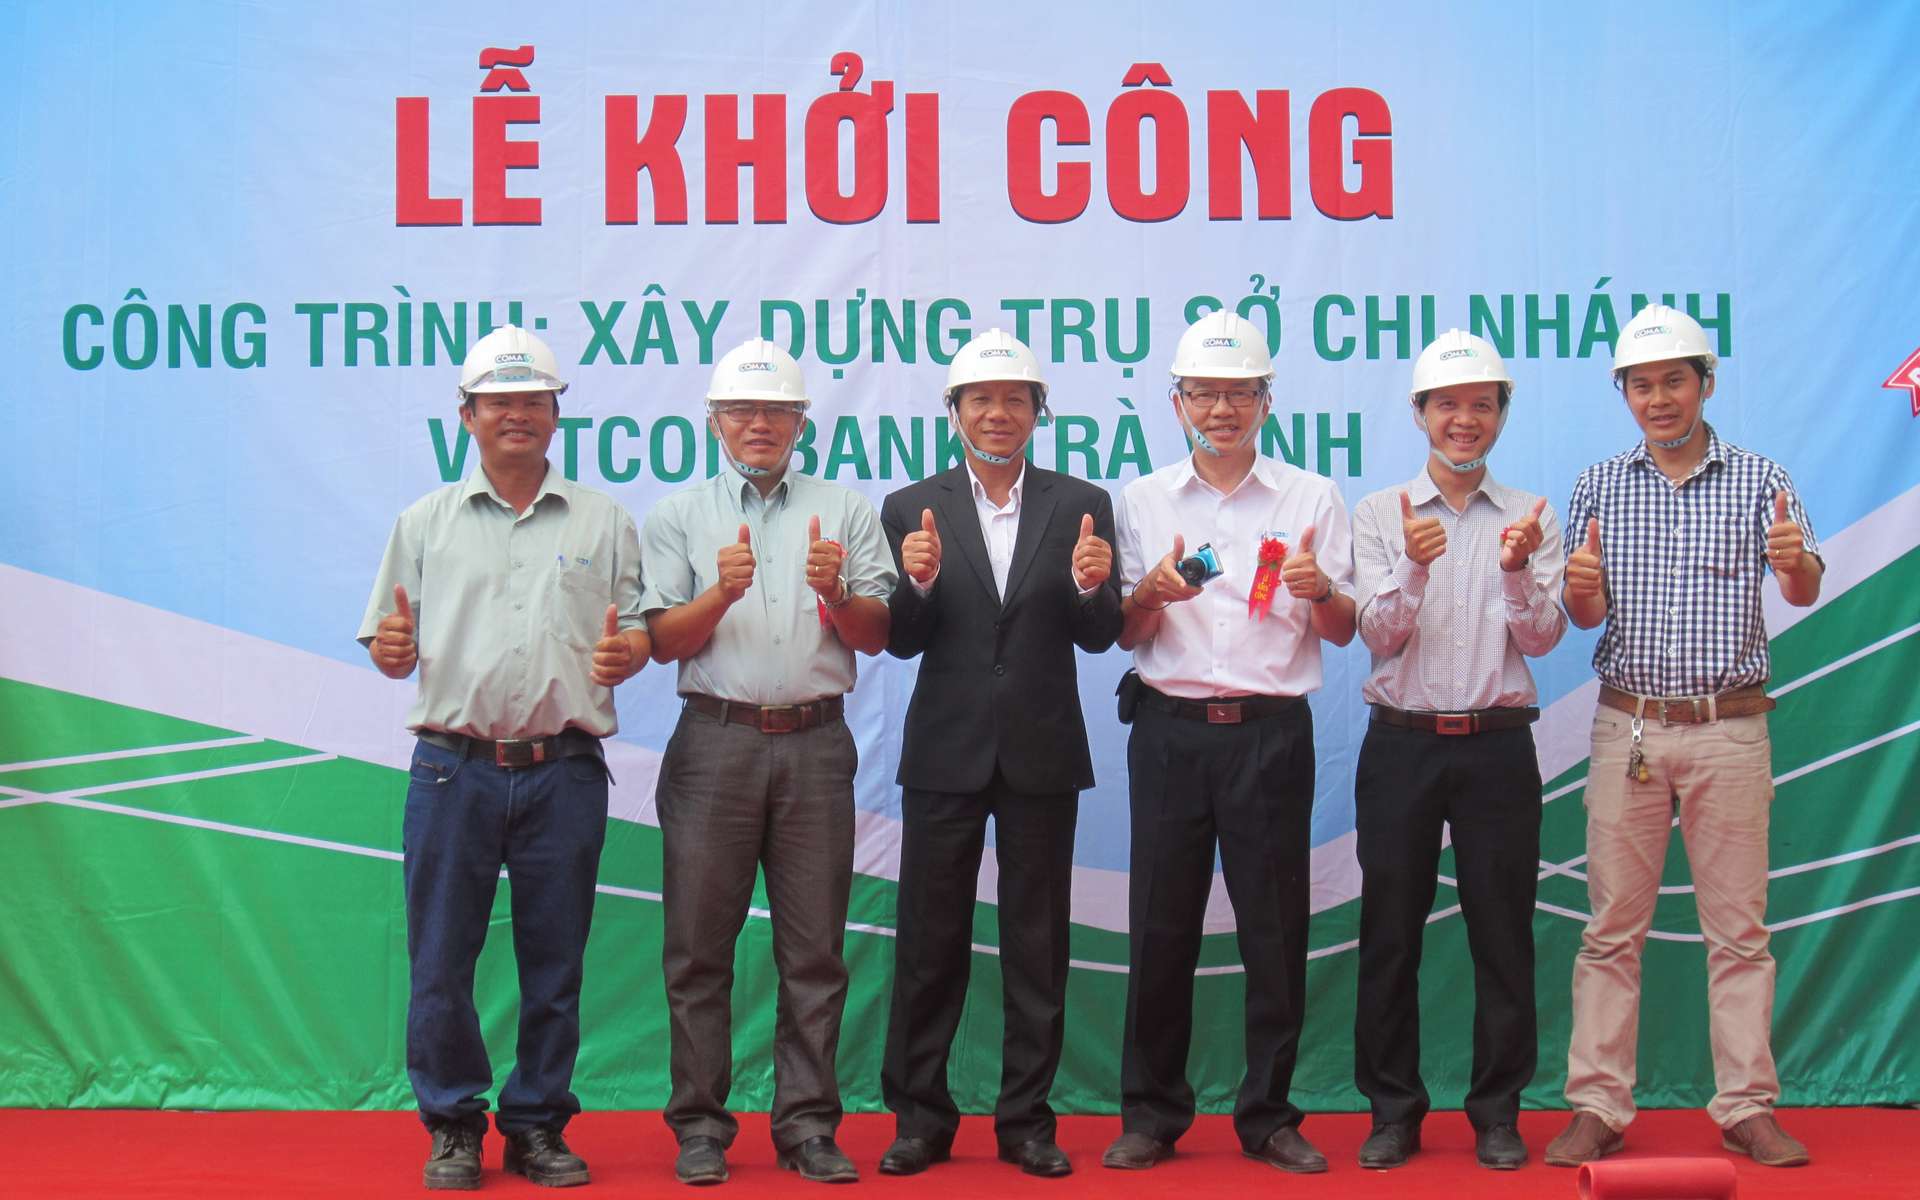 le-khoi-cong-cong-trinh-tru-so-vietcombank-tra-vinh